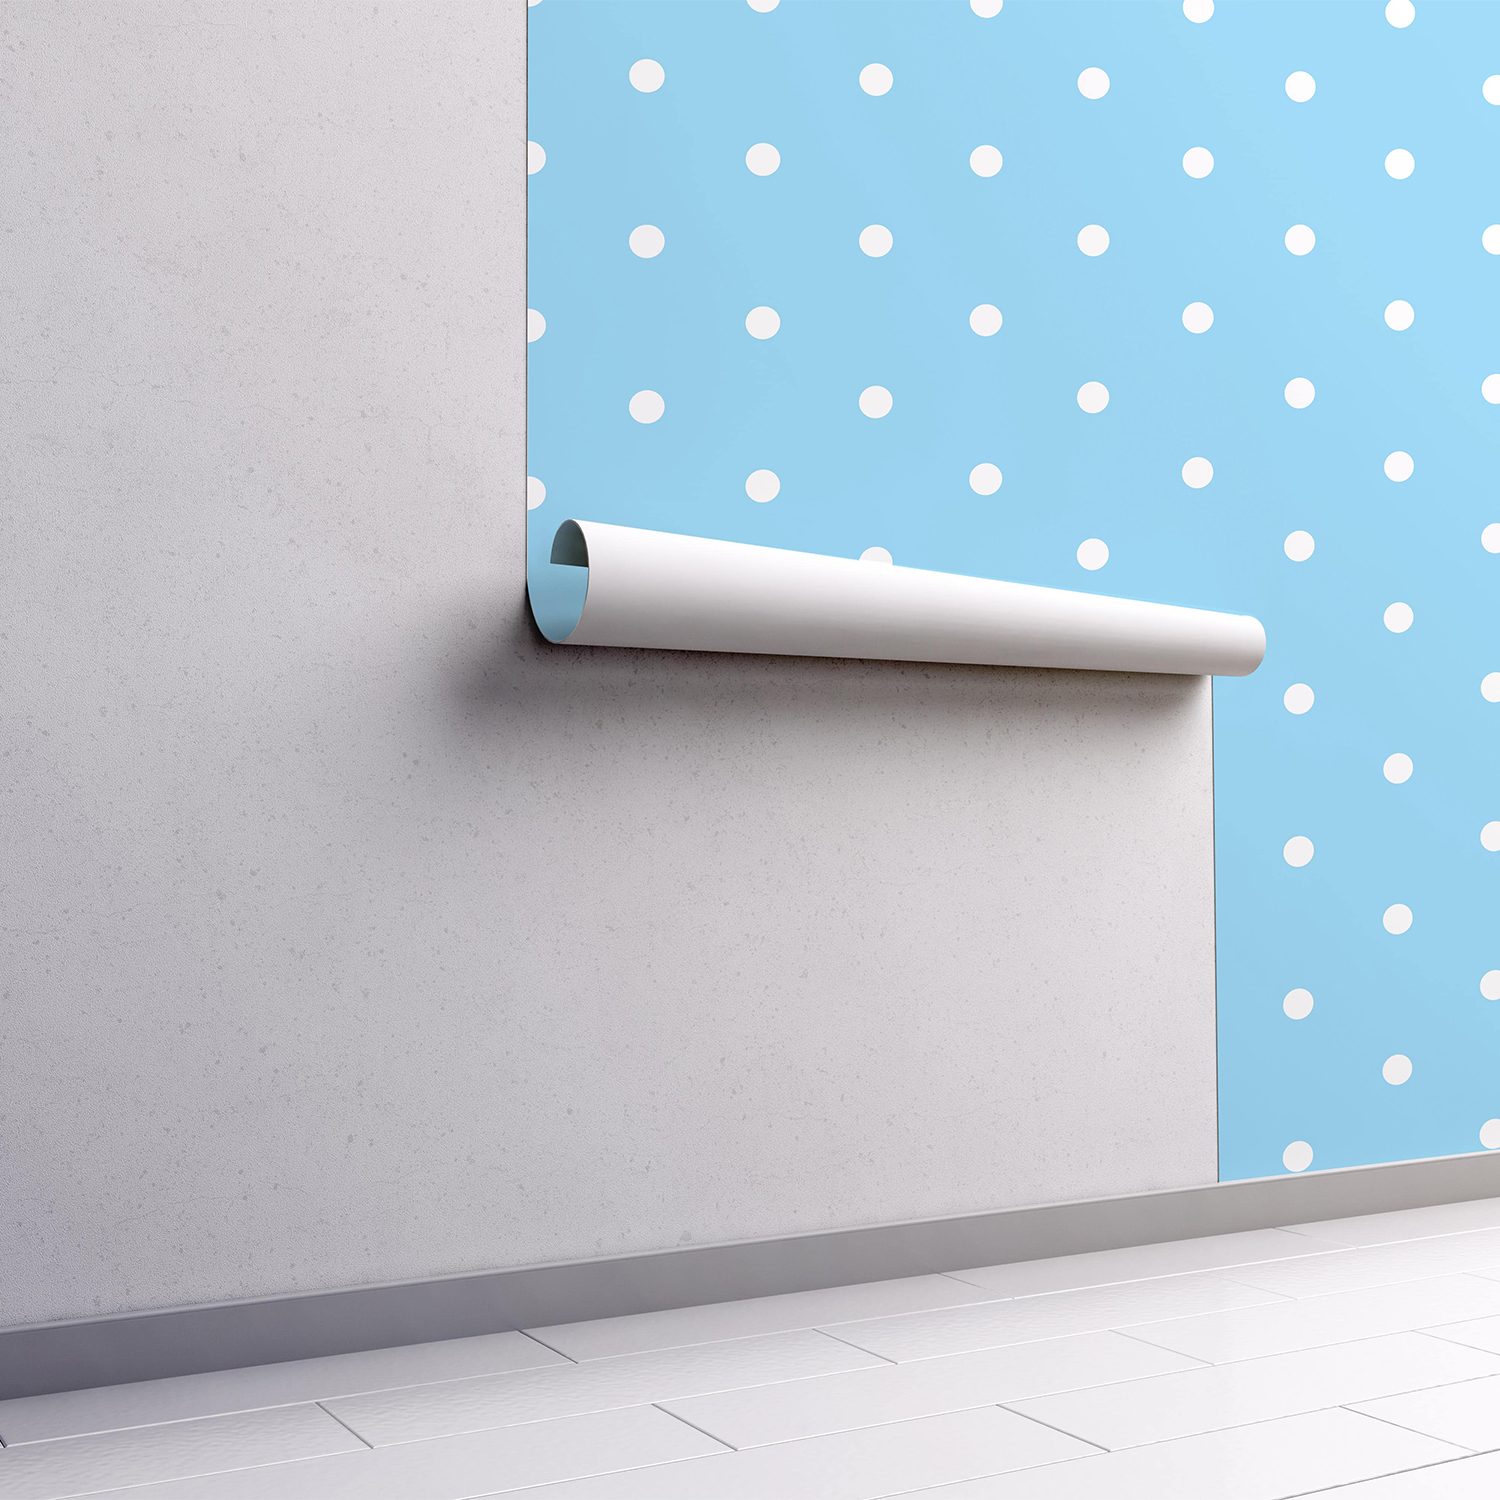 PP58-mur.rouleau-papier-peint-adhesif-decoratif-revetement-vinyle-motifs-pois-blanc:bleu-renovation-meuble-mur-mini-min